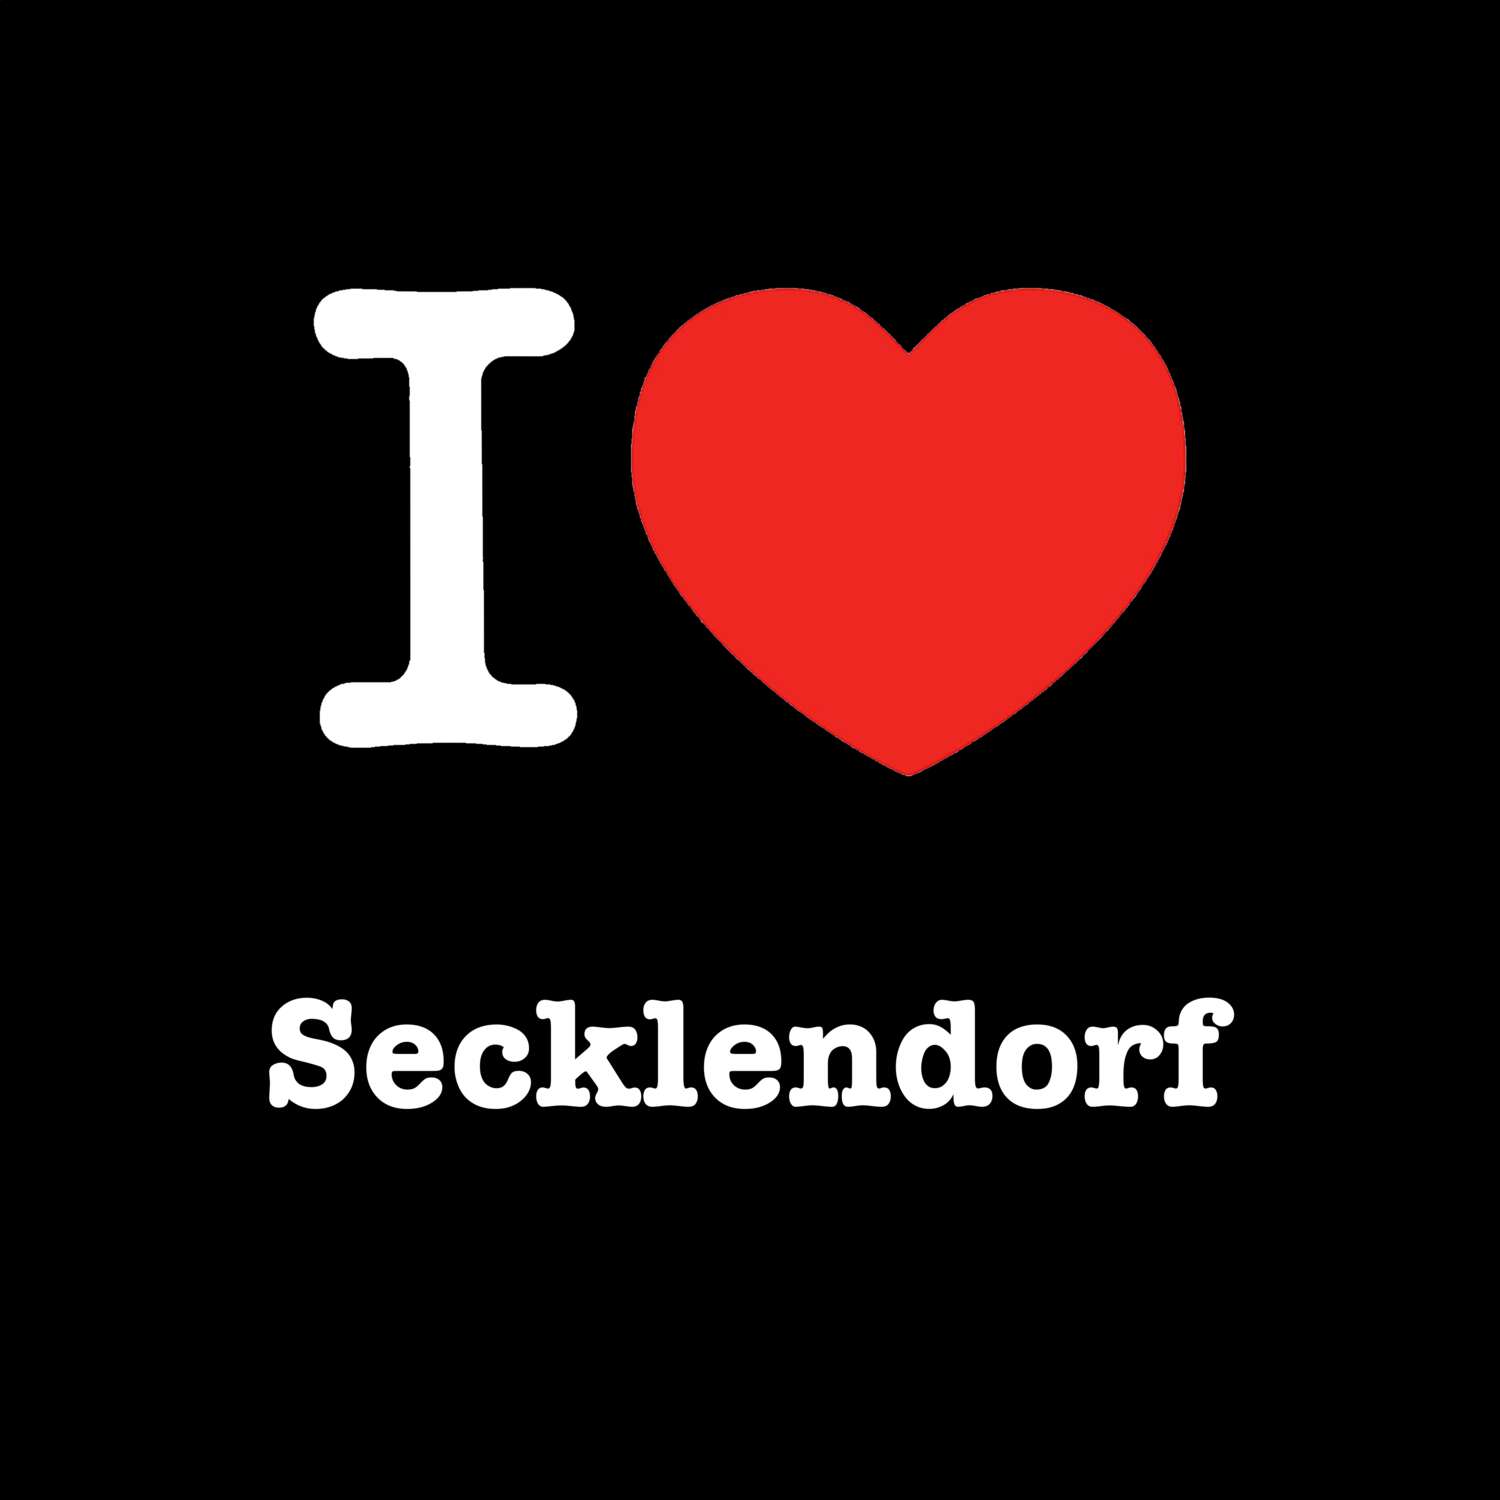 Secklendorf T-Shirt »I love«